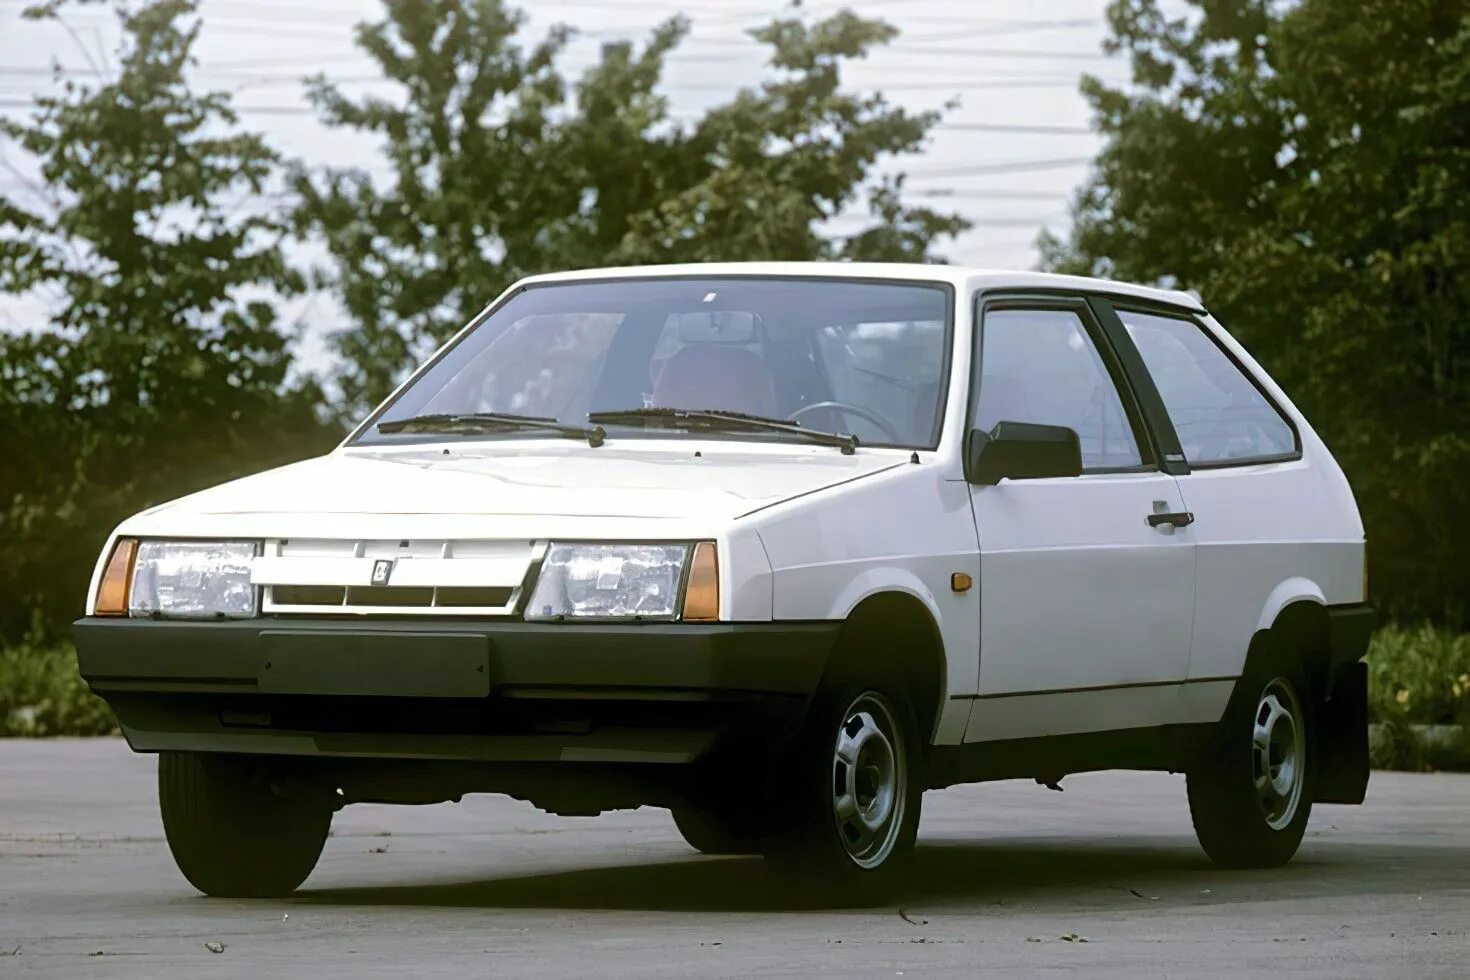 Название автомобиля ваз. ВАЗ 2108 Samara. ВАЗ 2108 1983. ВАЗ 2108 -80.